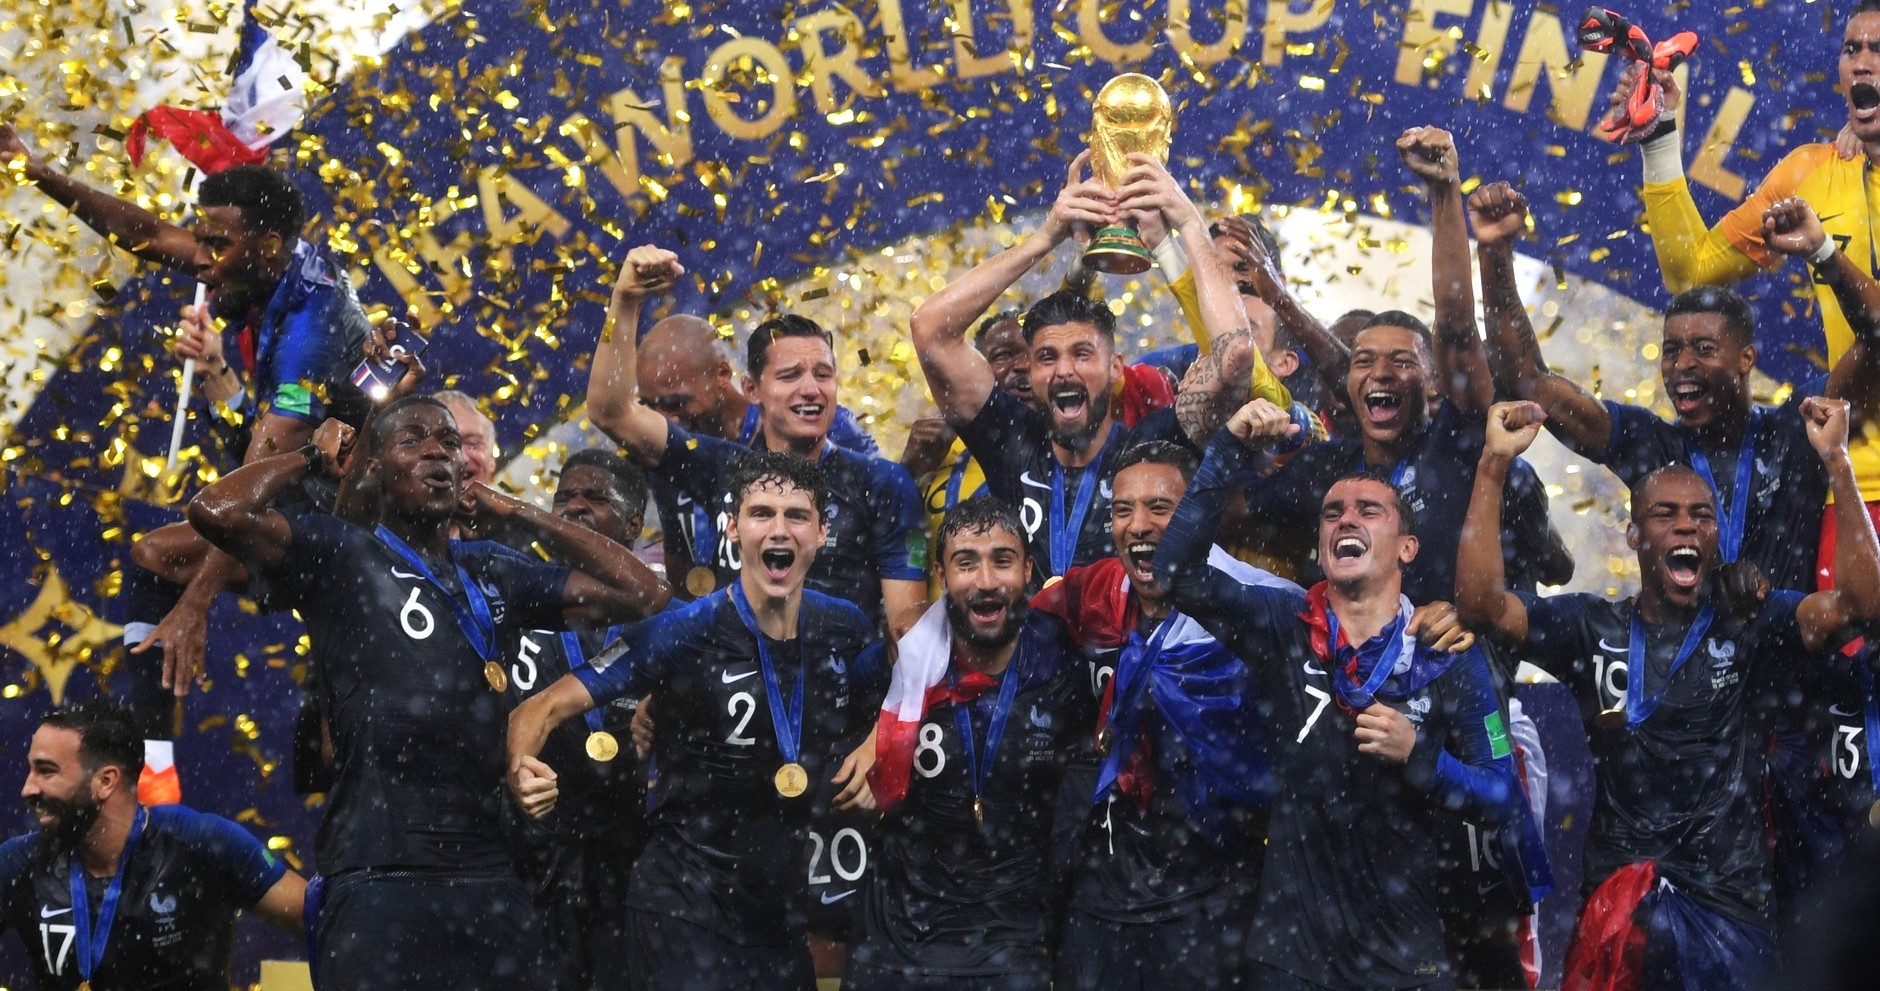 L'équipe de France, vainqueur de la Coupe du monde de la FIFA 2018